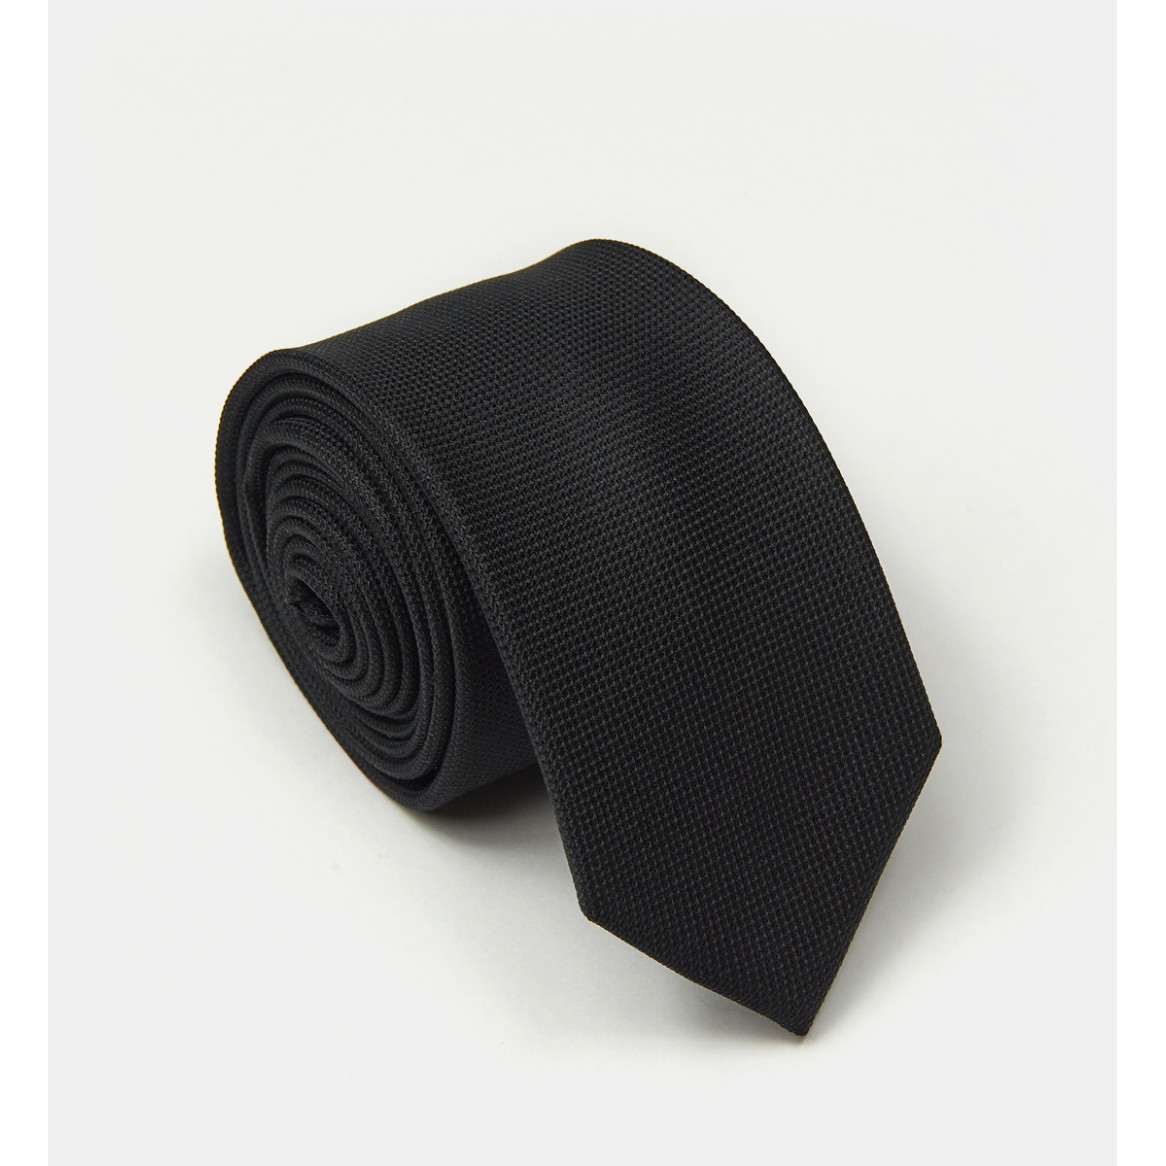 Cravate Noire en soie